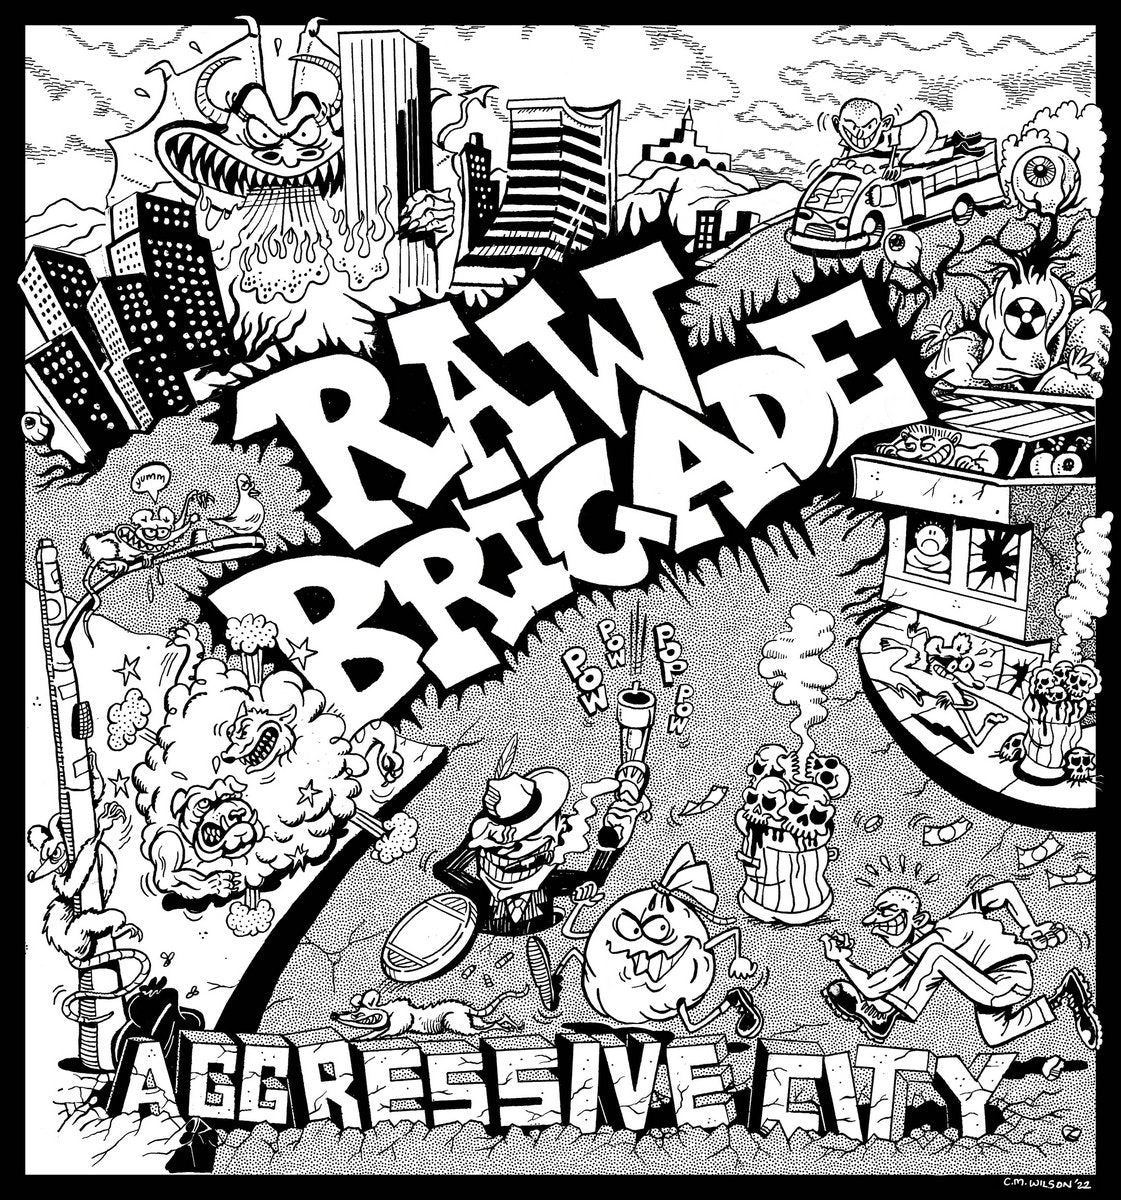 Raw Brigade - 'Aggressive City'